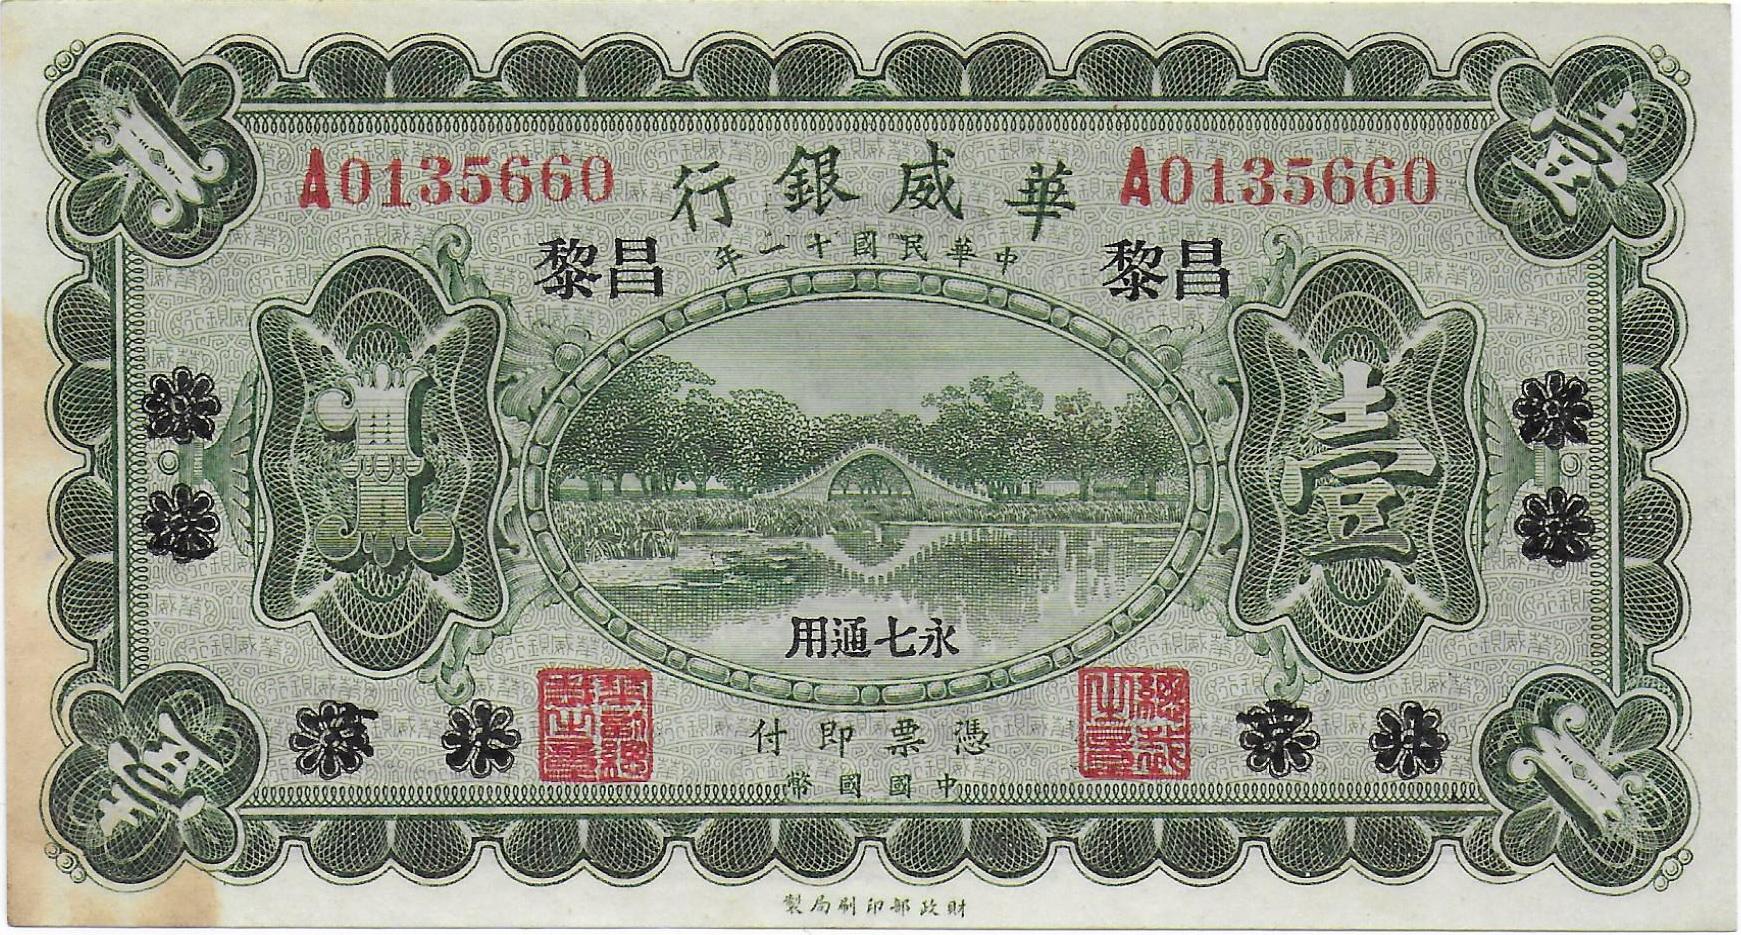 China Sino Scandinavian Bank 1 Yuan 1922 front.jpg